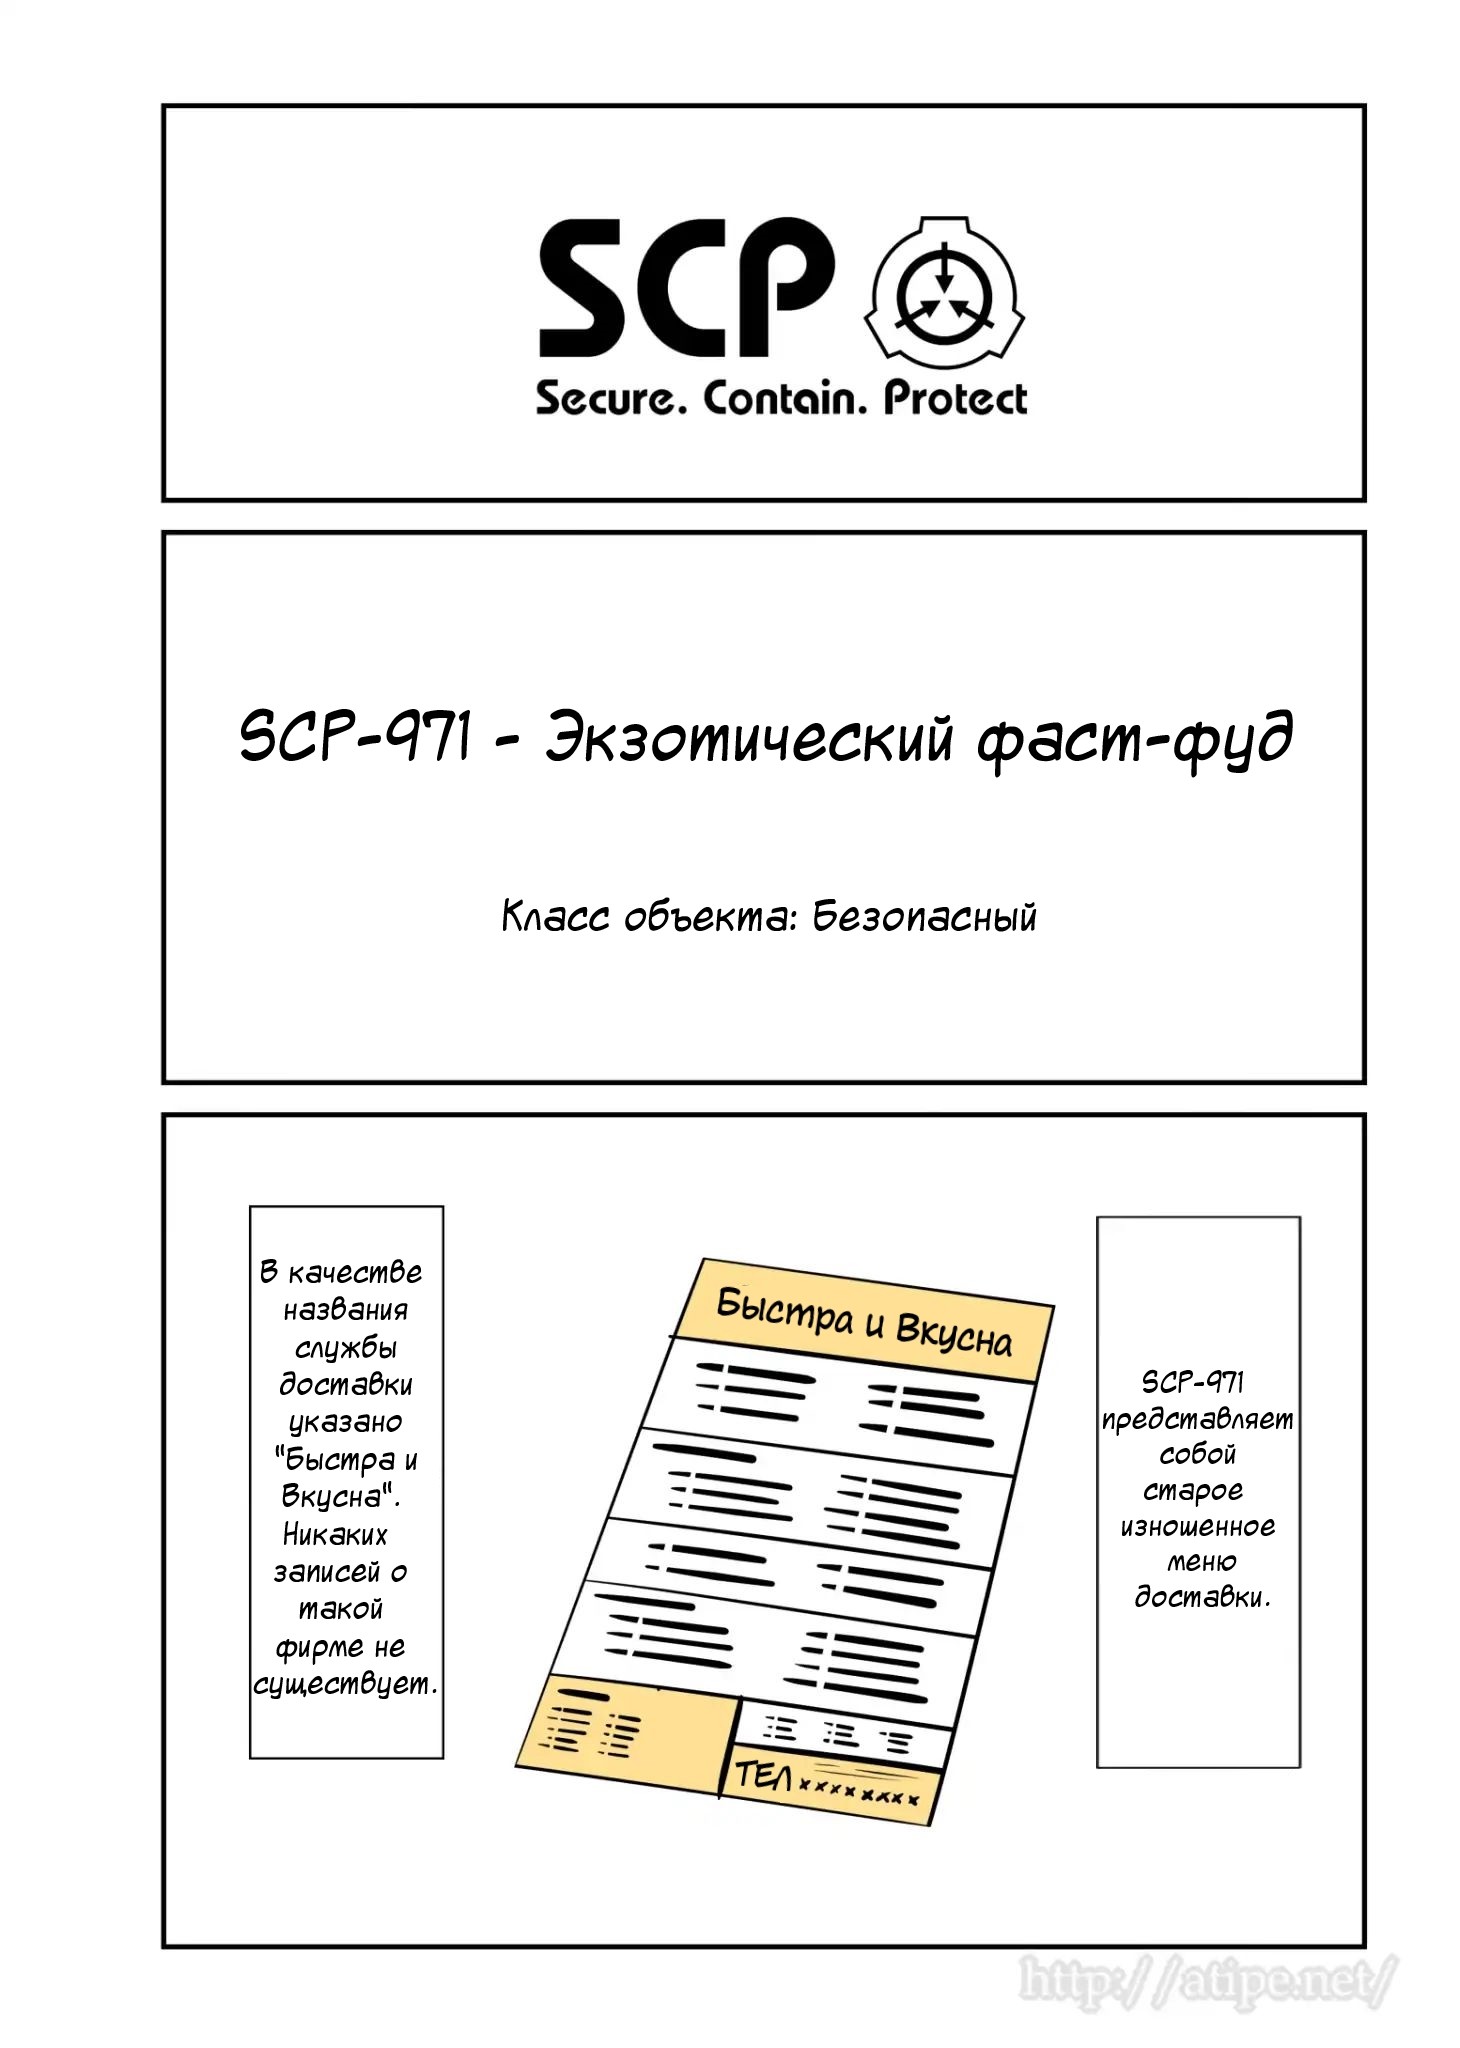 Упрощенный SCP 1 - 51 SCP-971